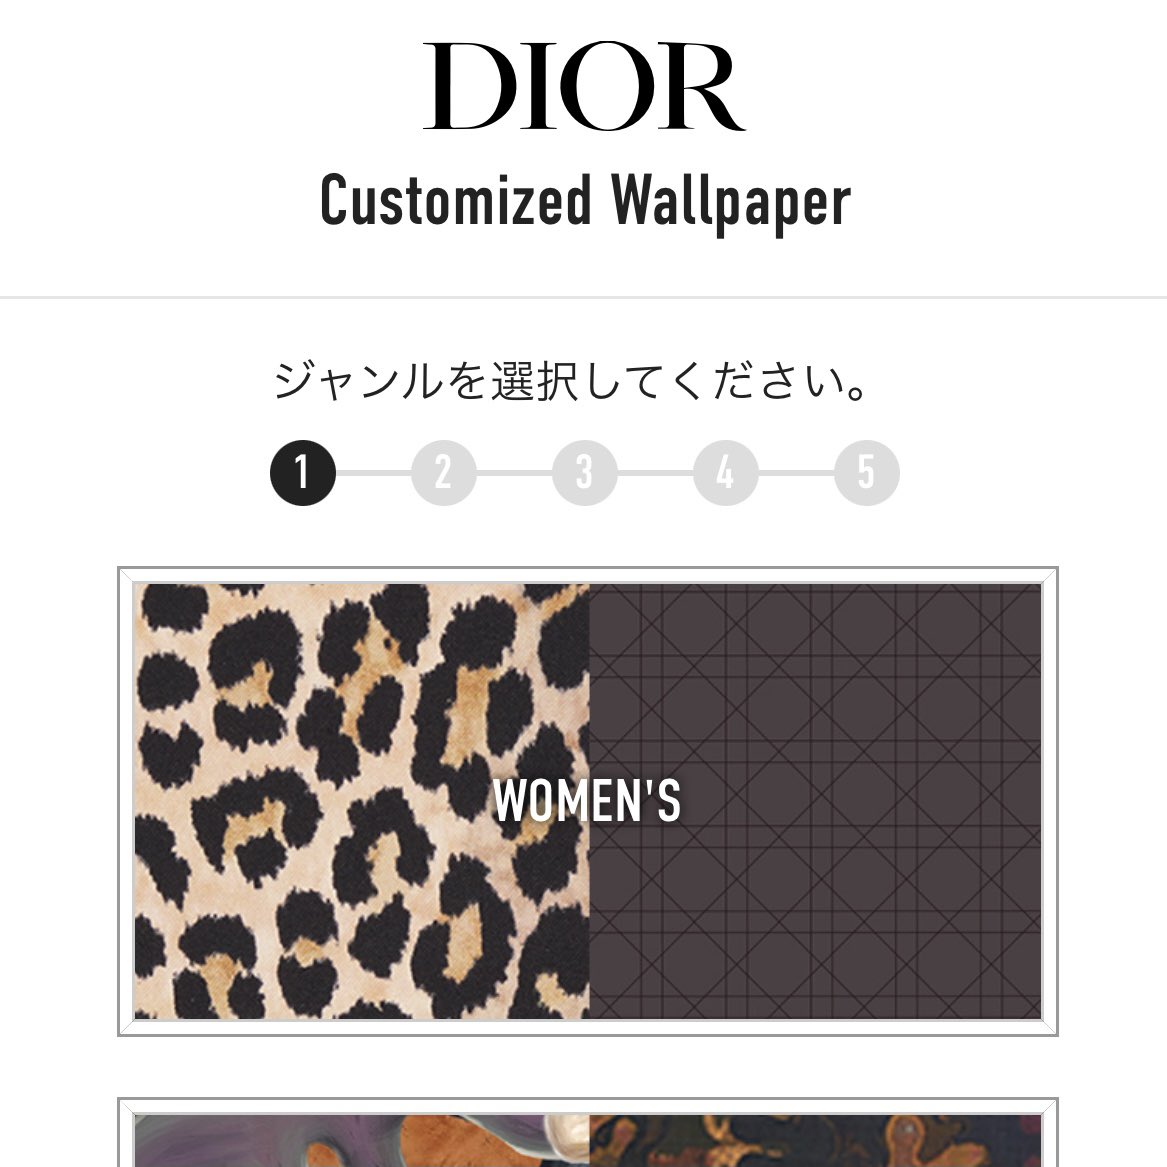 𝓐 Diorのlineアカウントでできる カスタマイズ壁紙楽しい 背景もアイテムも選べて 名前まで入れられる 何パターンも作っちゃう T Co Oywevtqjs7 Twitter